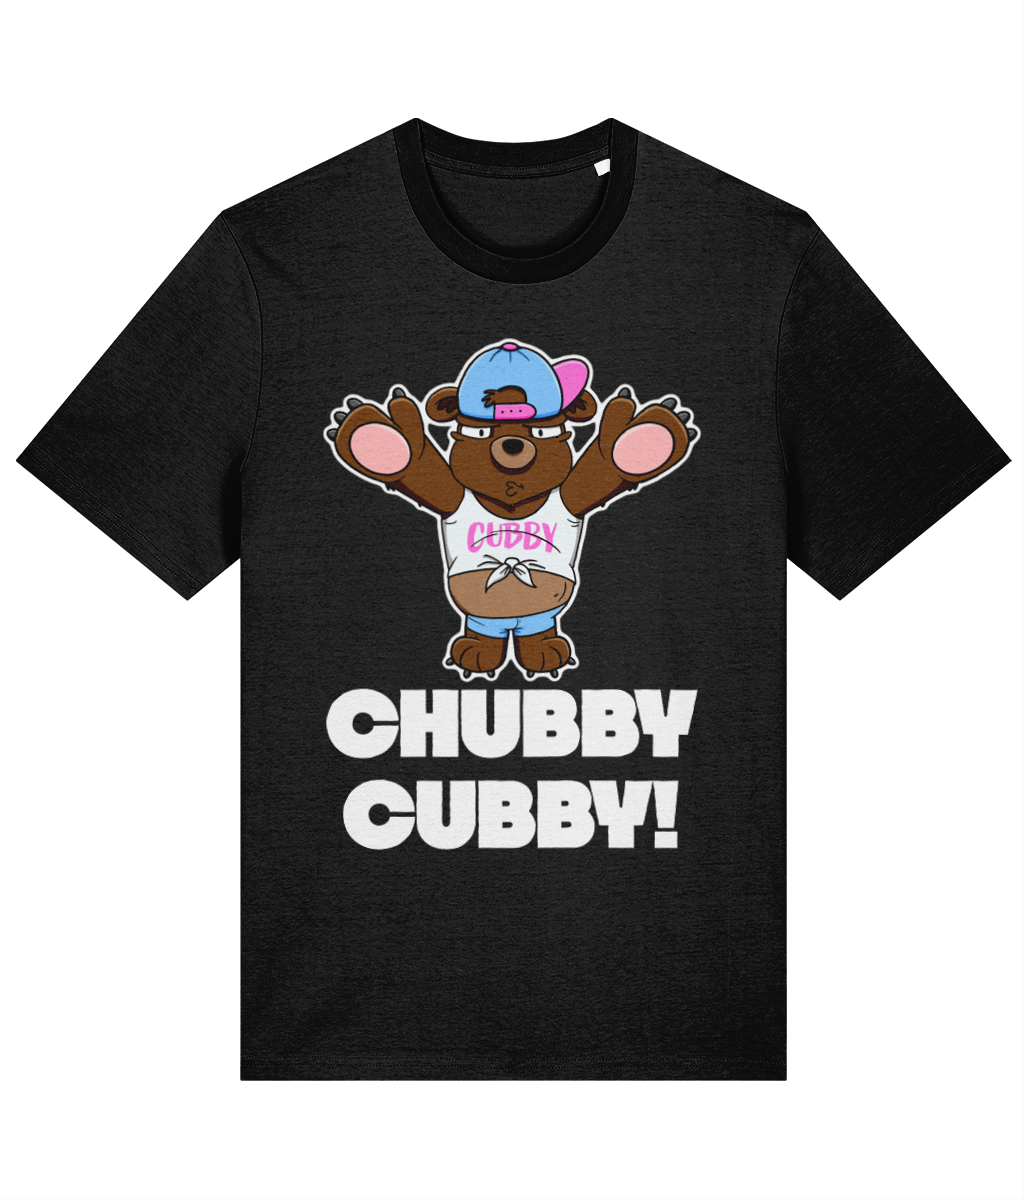 Chubby Cubby! T-Shirt